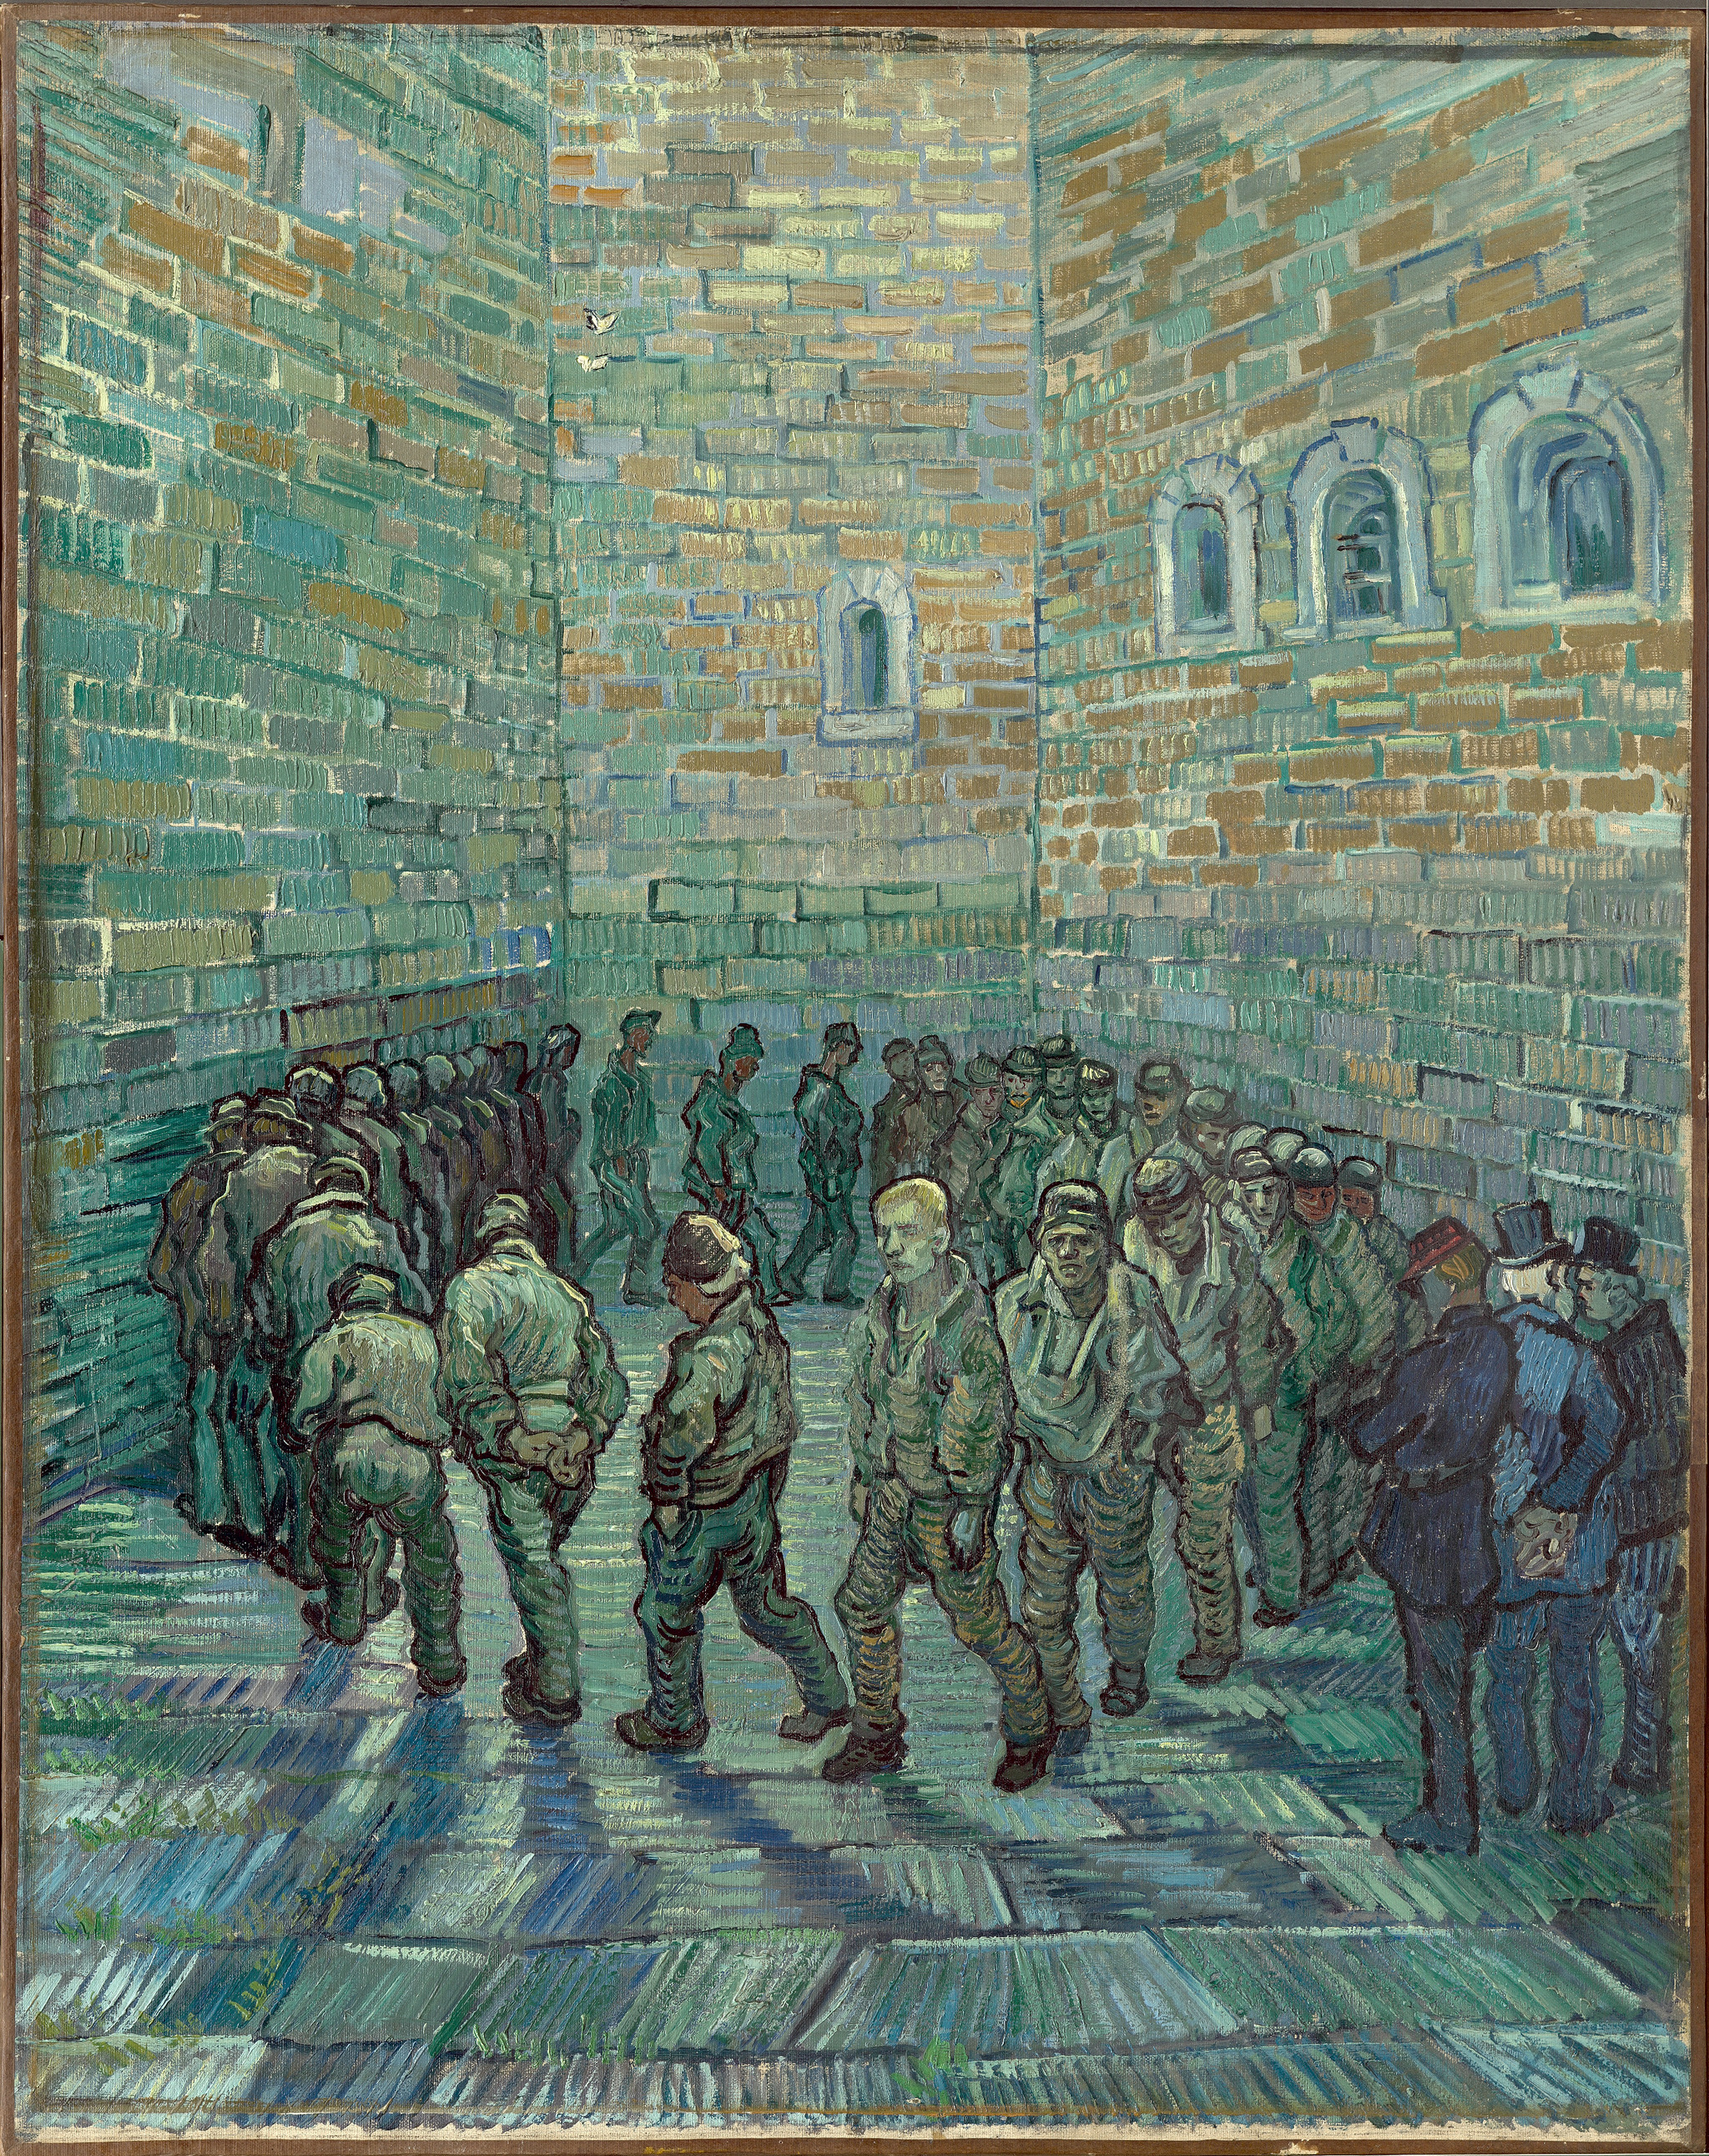 La ronda de los prisioneros" de Van Gogh